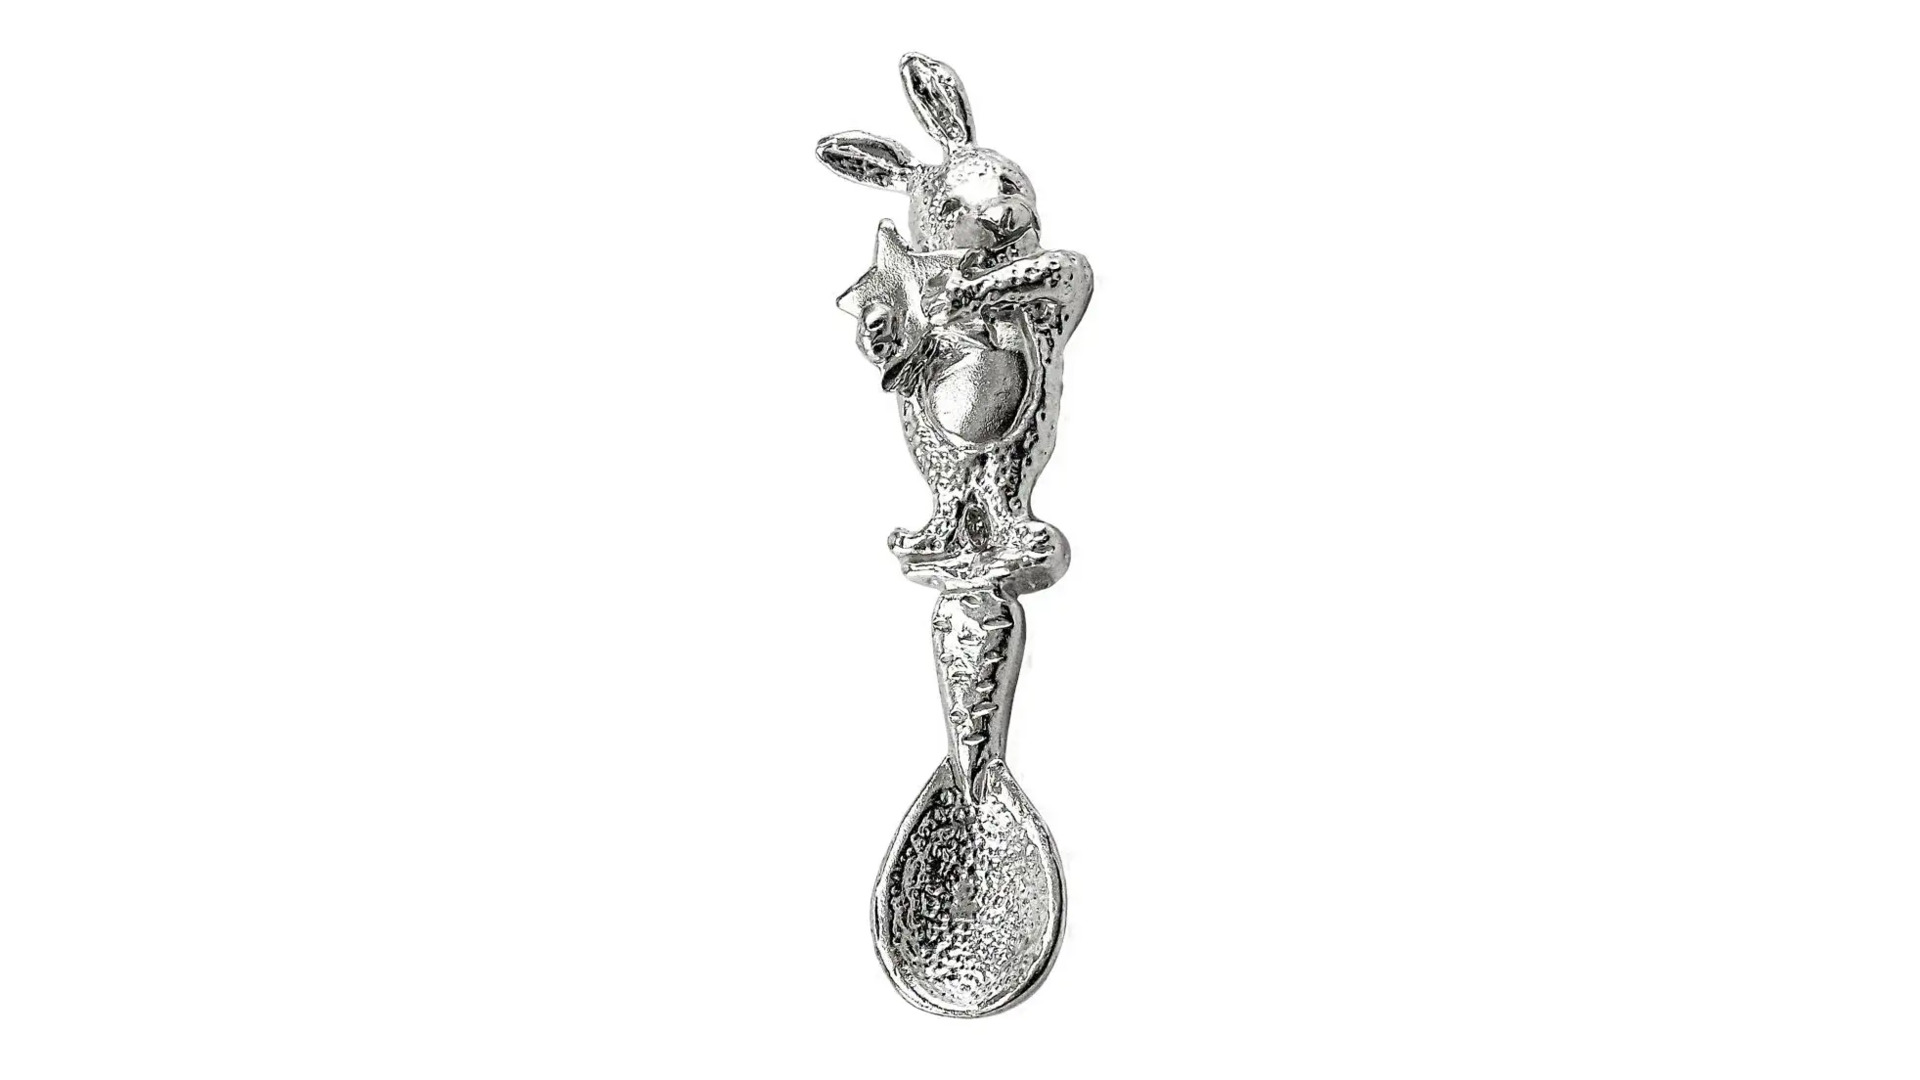 Ложка сувенирная АргентА Кролик 5,6 г, серебро 925